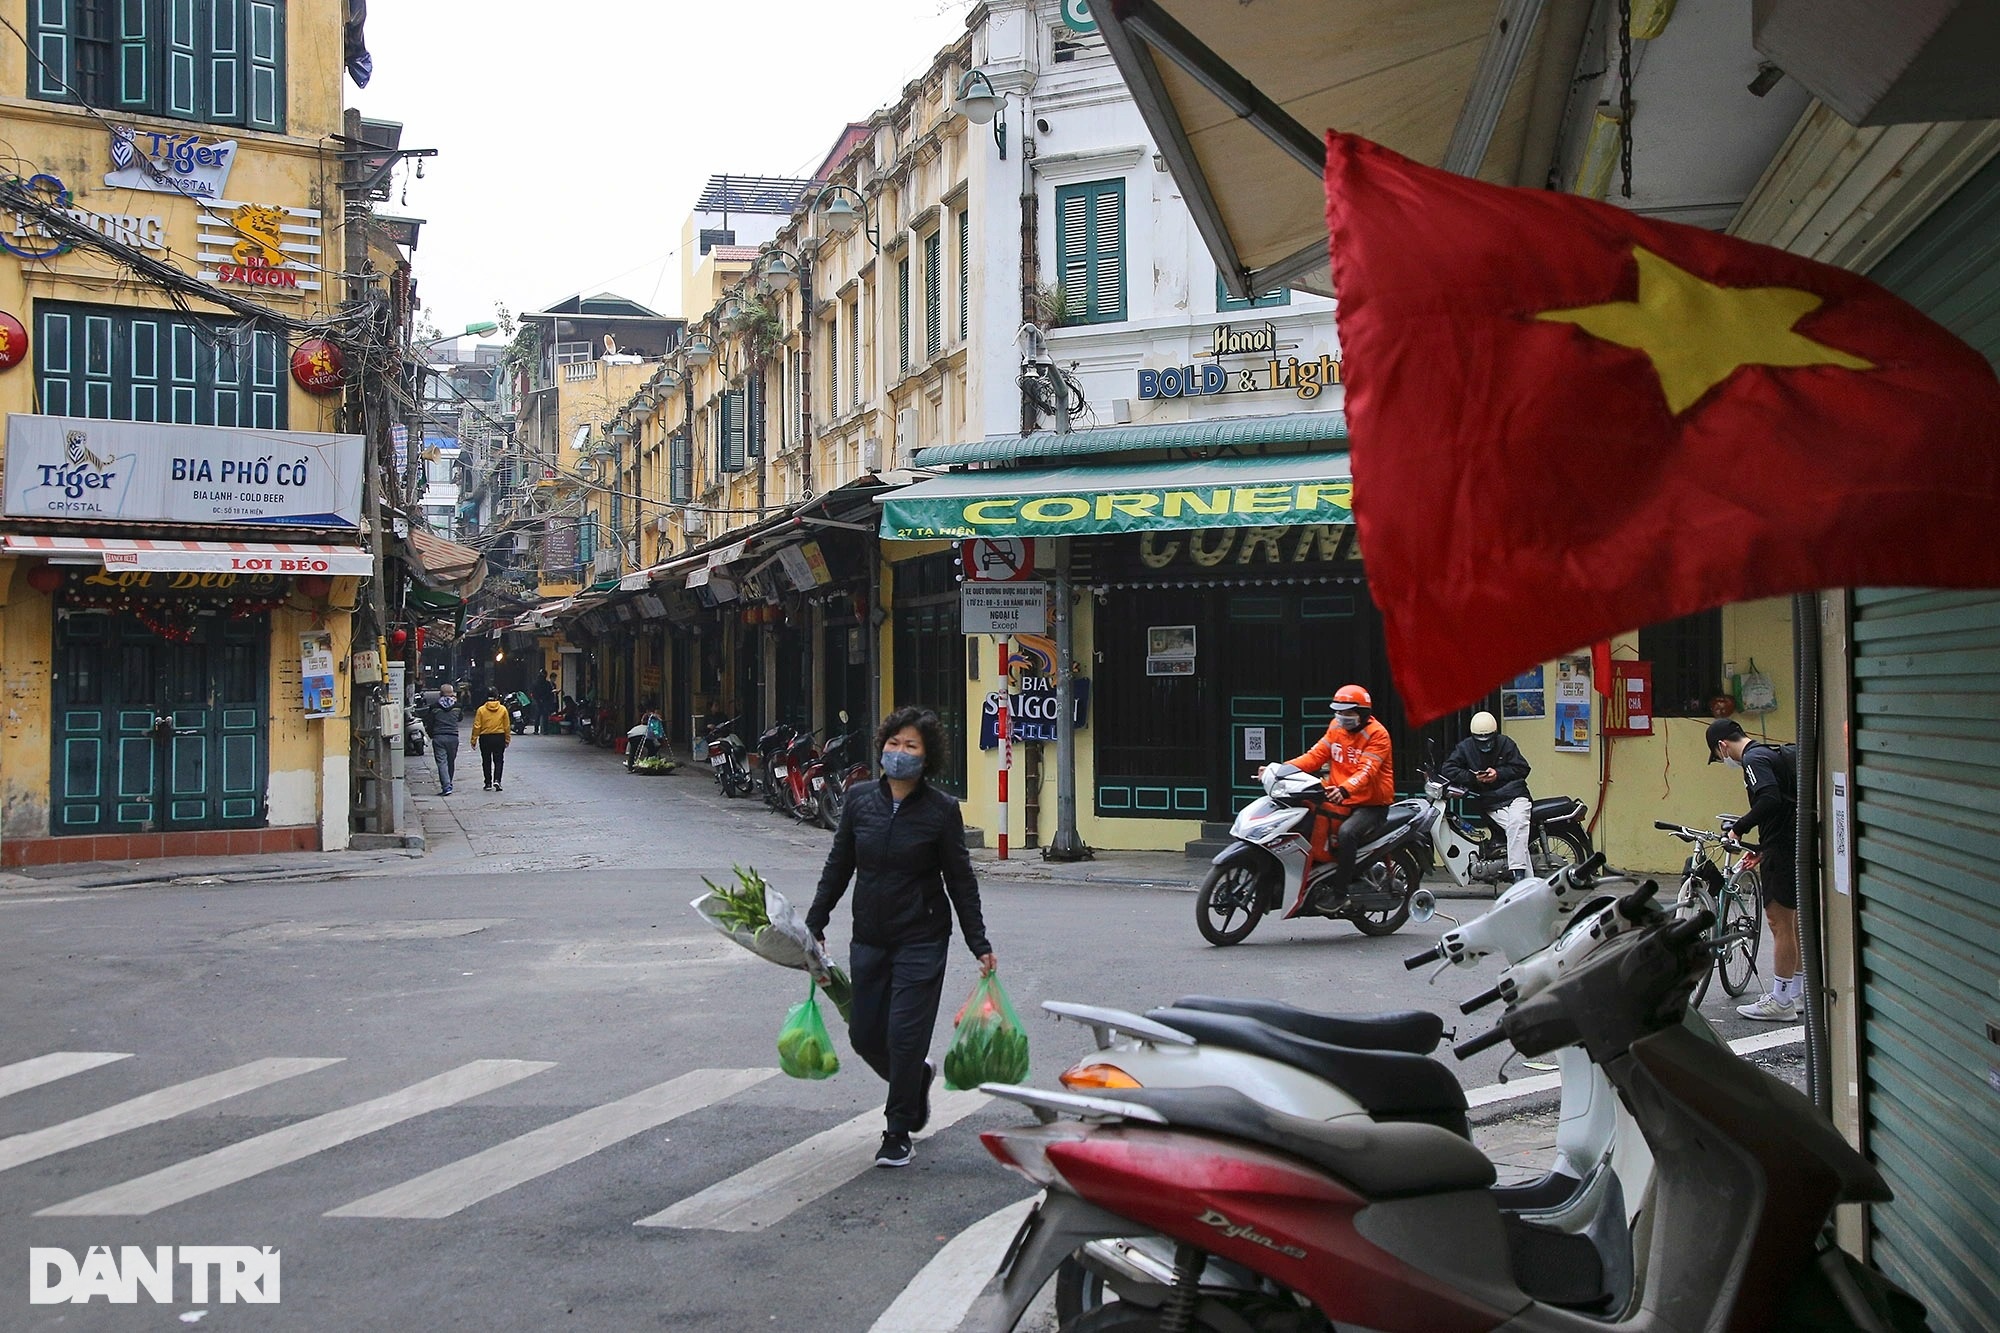 Hà Nội: Khám phá những góc phố cổ kính, chuỗi quán phở thơm ngon và những công trình kiến trúc độc đáo tại thủ đô Hà Nội. Hình ảnh sẽ đưa bạn đến với một Hà Nội đầy sức sống và thịnh vượng.